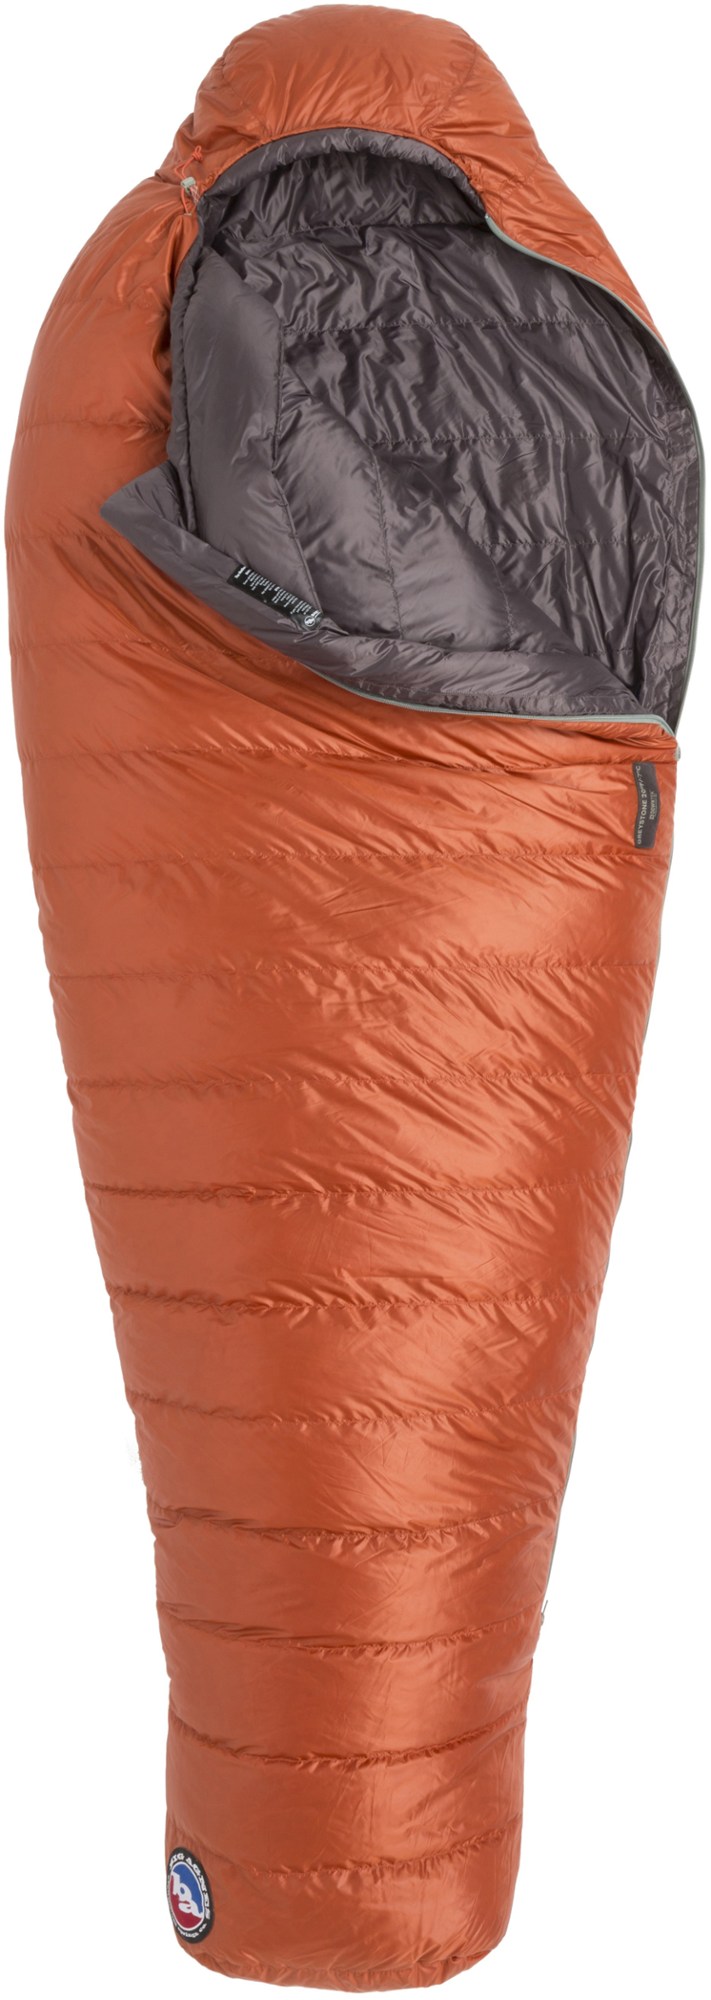 спальный мешок echo park 0 big agnes зеленый Спальный мешок Greystone 20 - мужской Big Agnes, красный